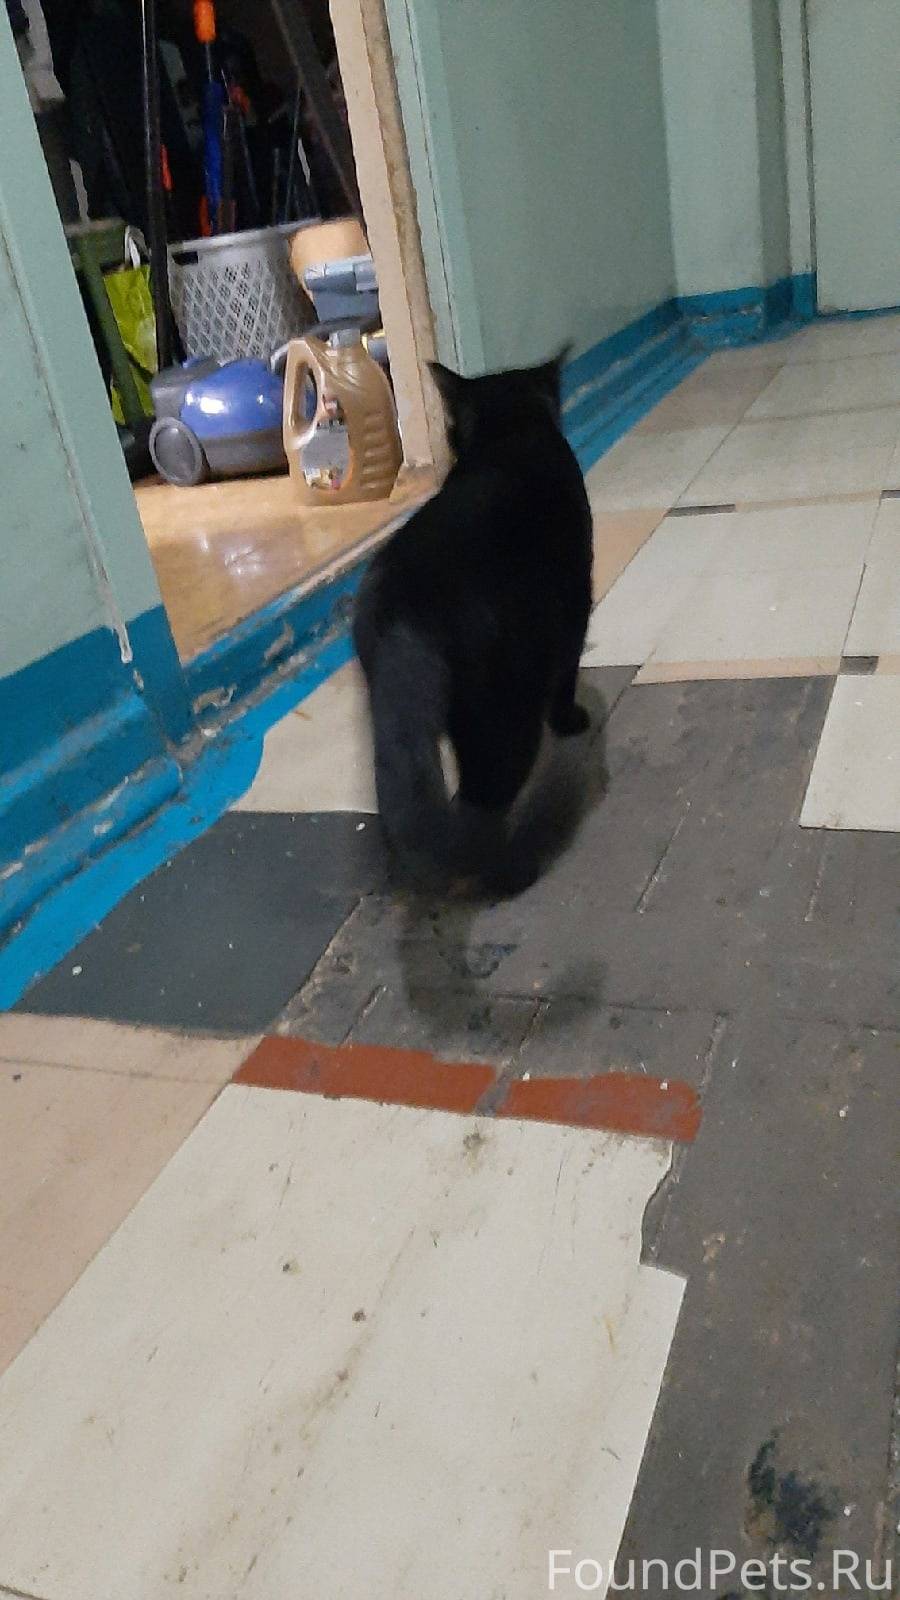 Найден чёрный кот с небольшим белым пятном на груди